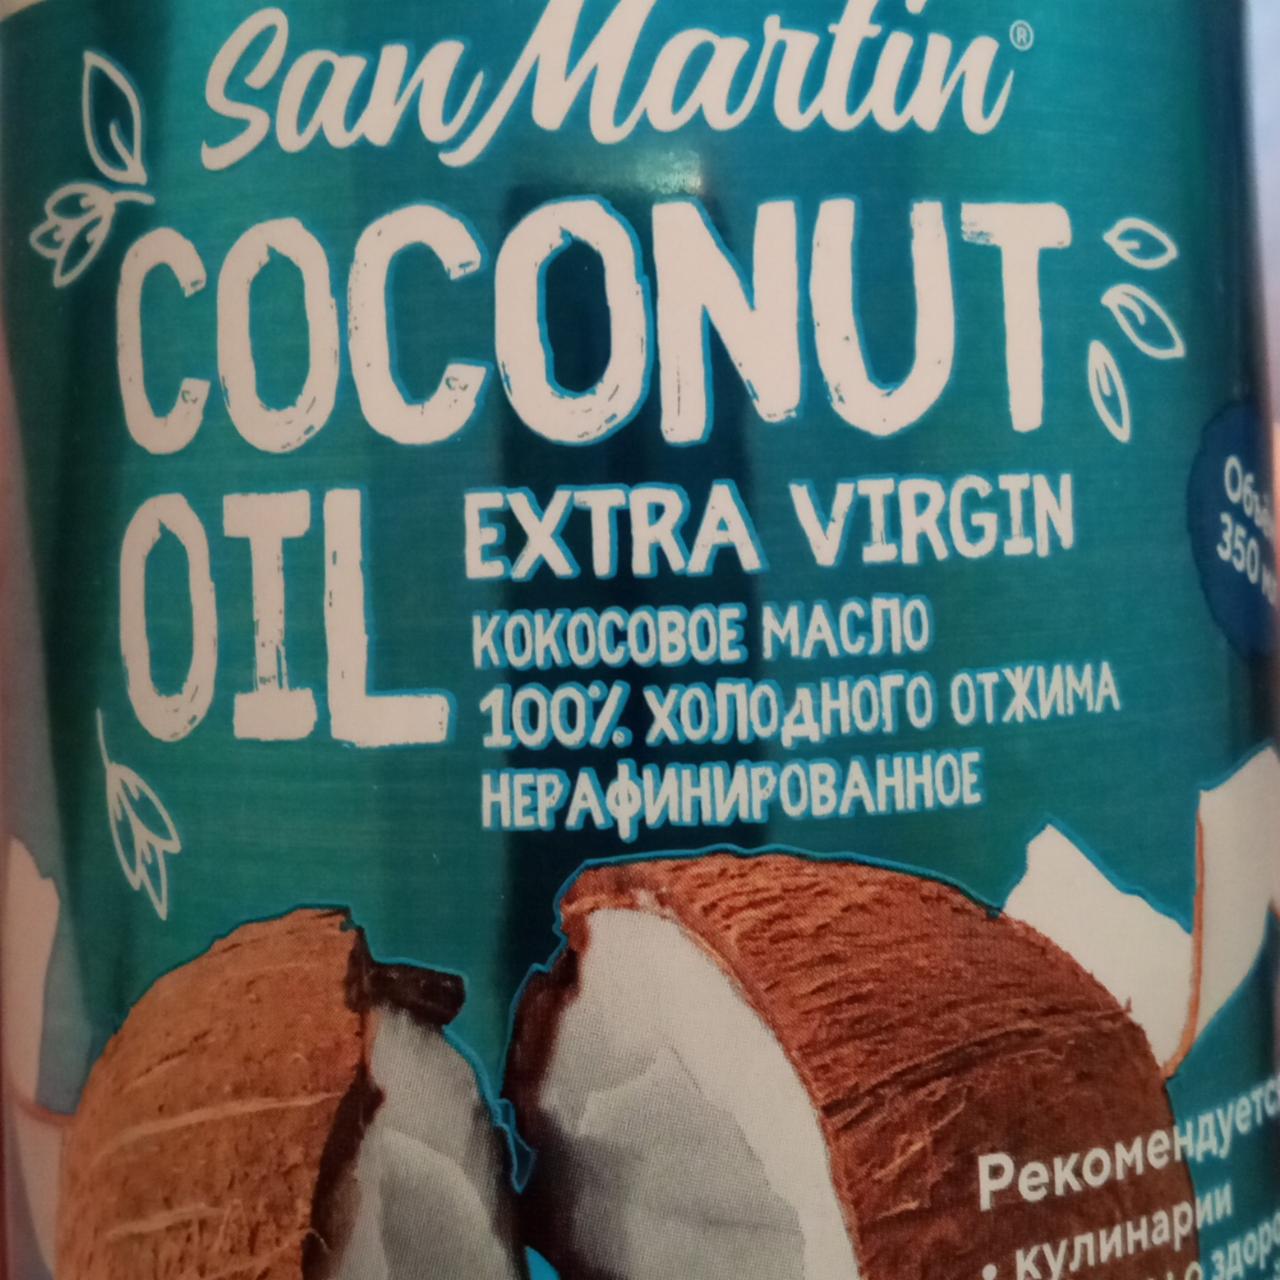 Фото - Кокосовое масло нерафинированное холодного отжима San Martin